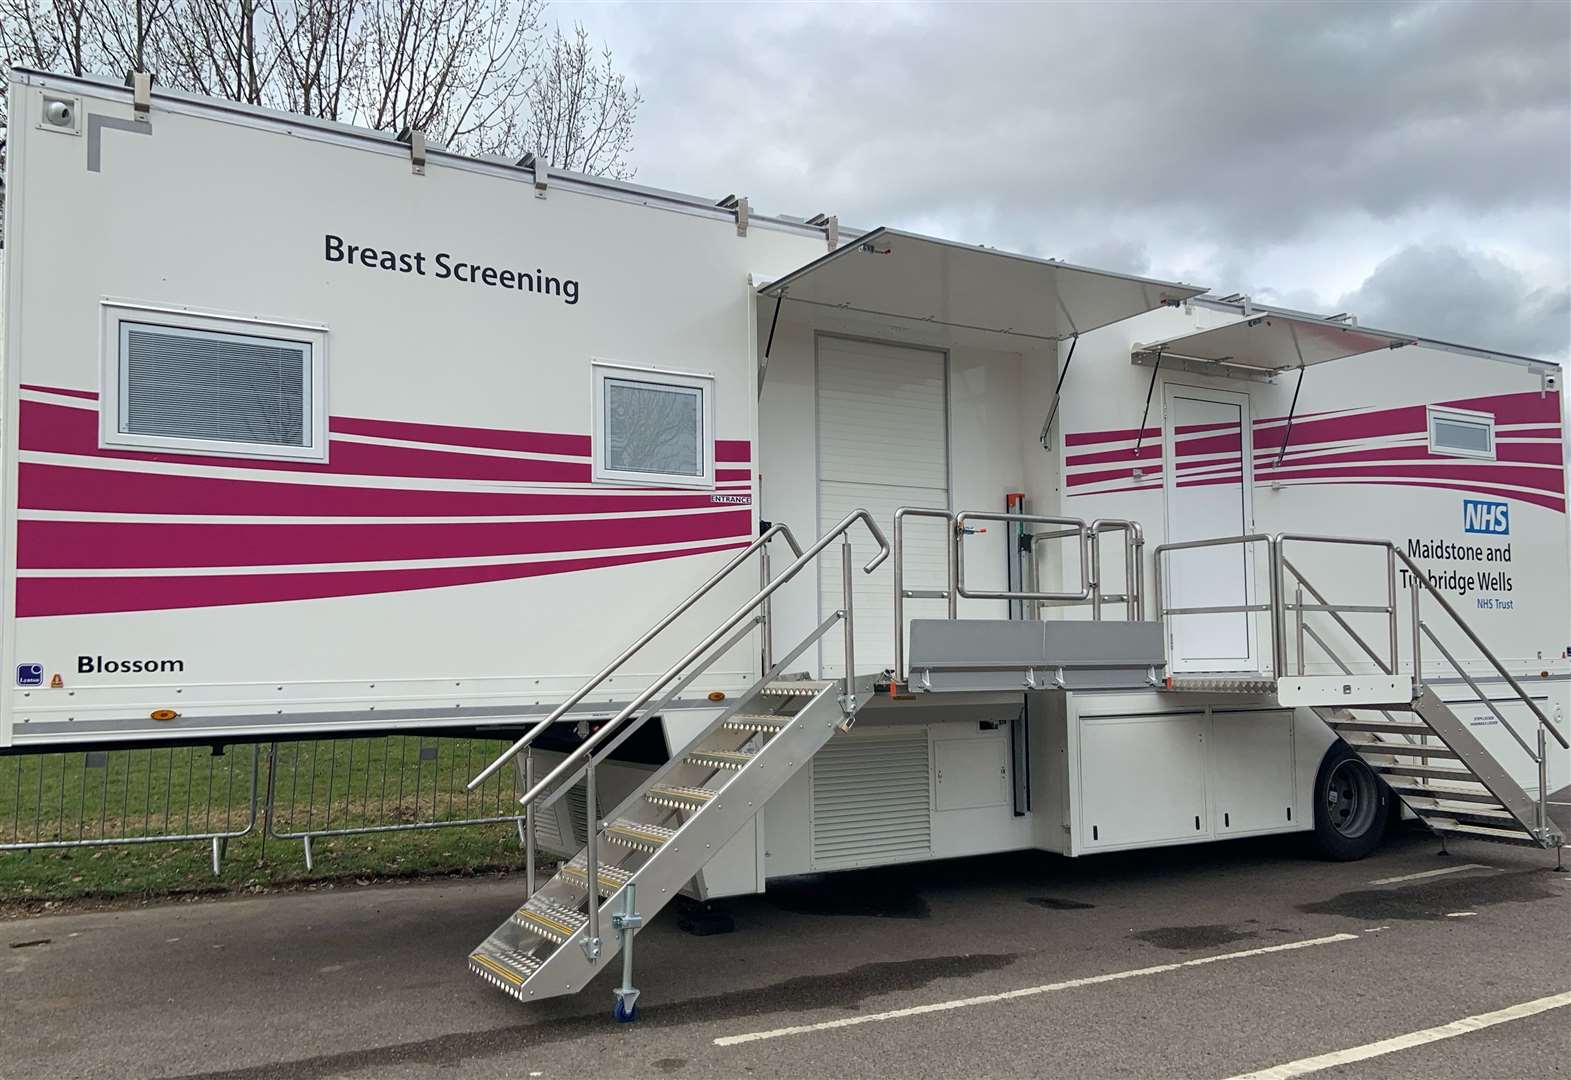 Breast screening van withdrawn after spate of vandalism 